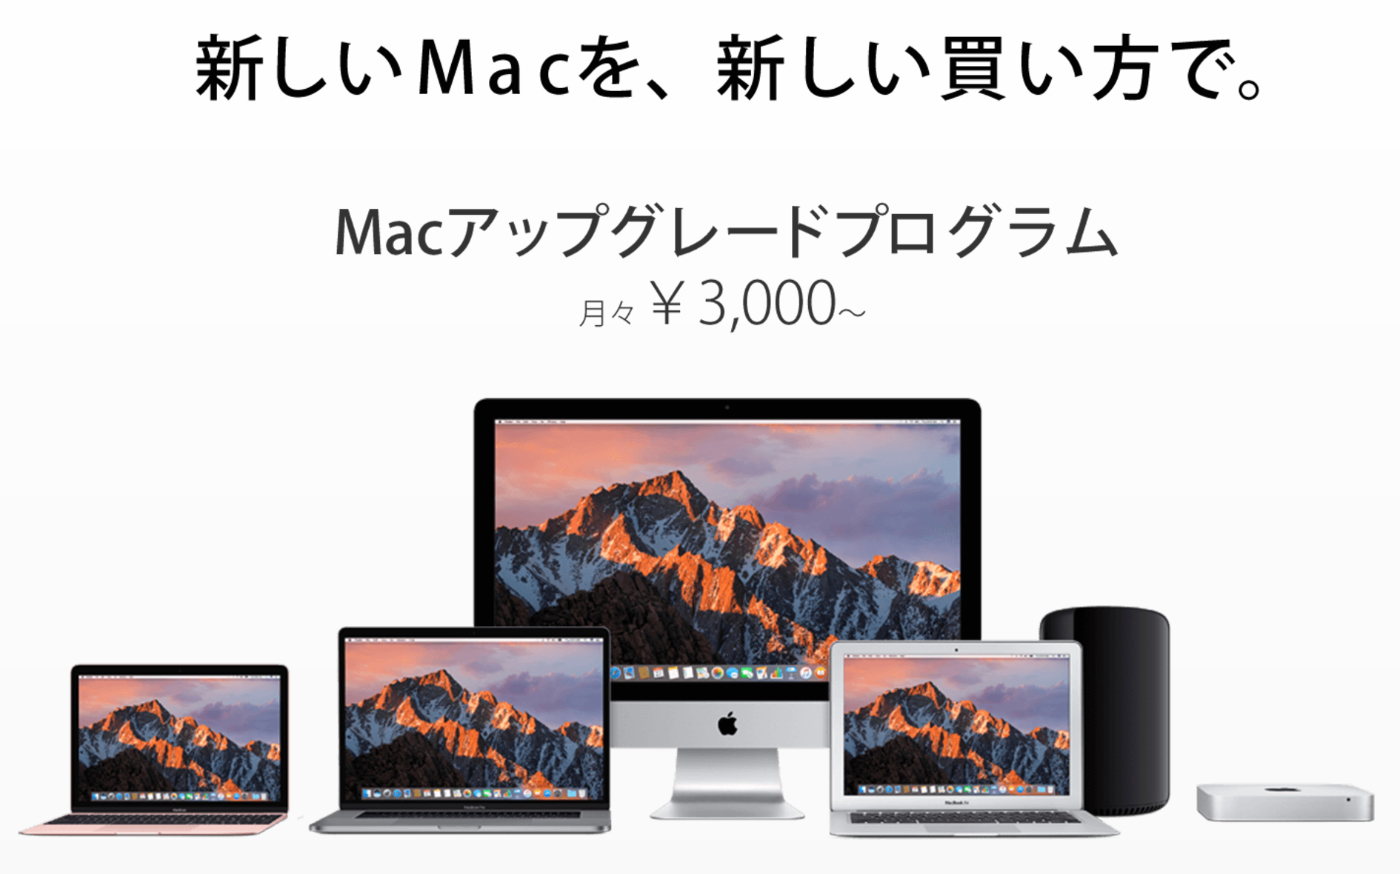 [Mac]MacBook Pro(2016)のTouch Barに対応したMicrosoft「Office 2016 for Mac 15.31.0」を使ってみたよ